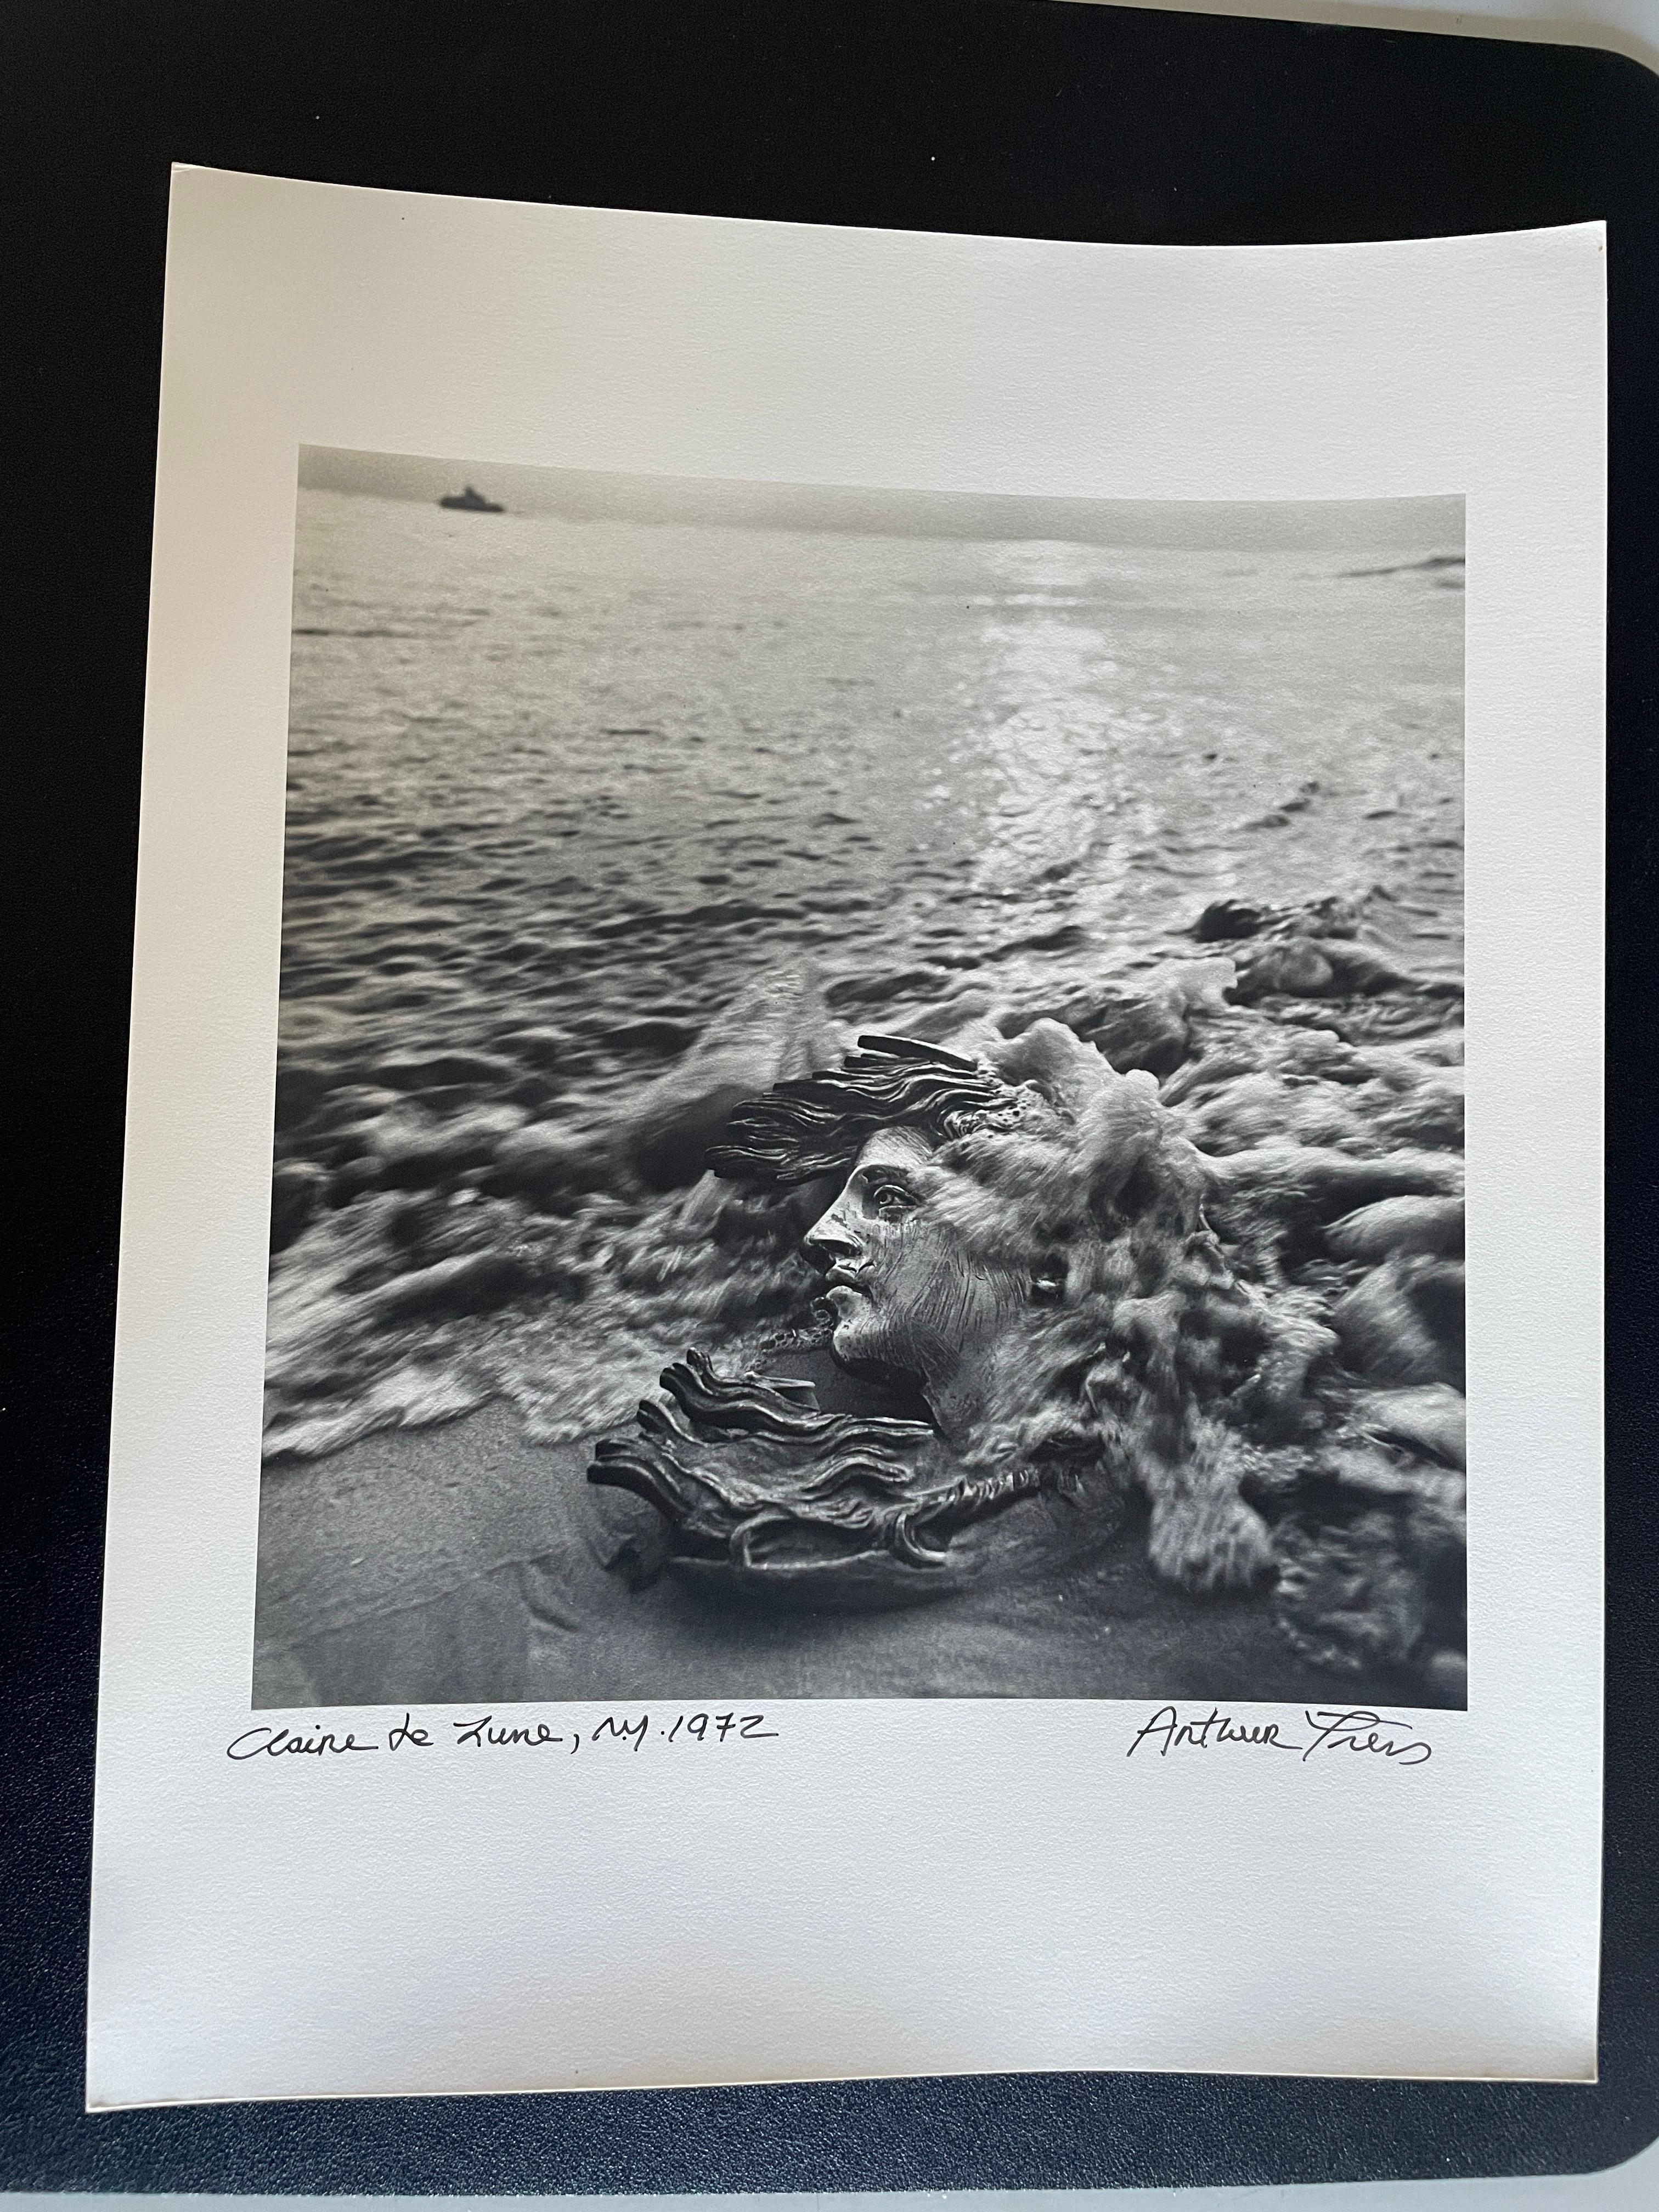 Claire De Lune, Breezy Point, New York - Photograph by Arthur Tress